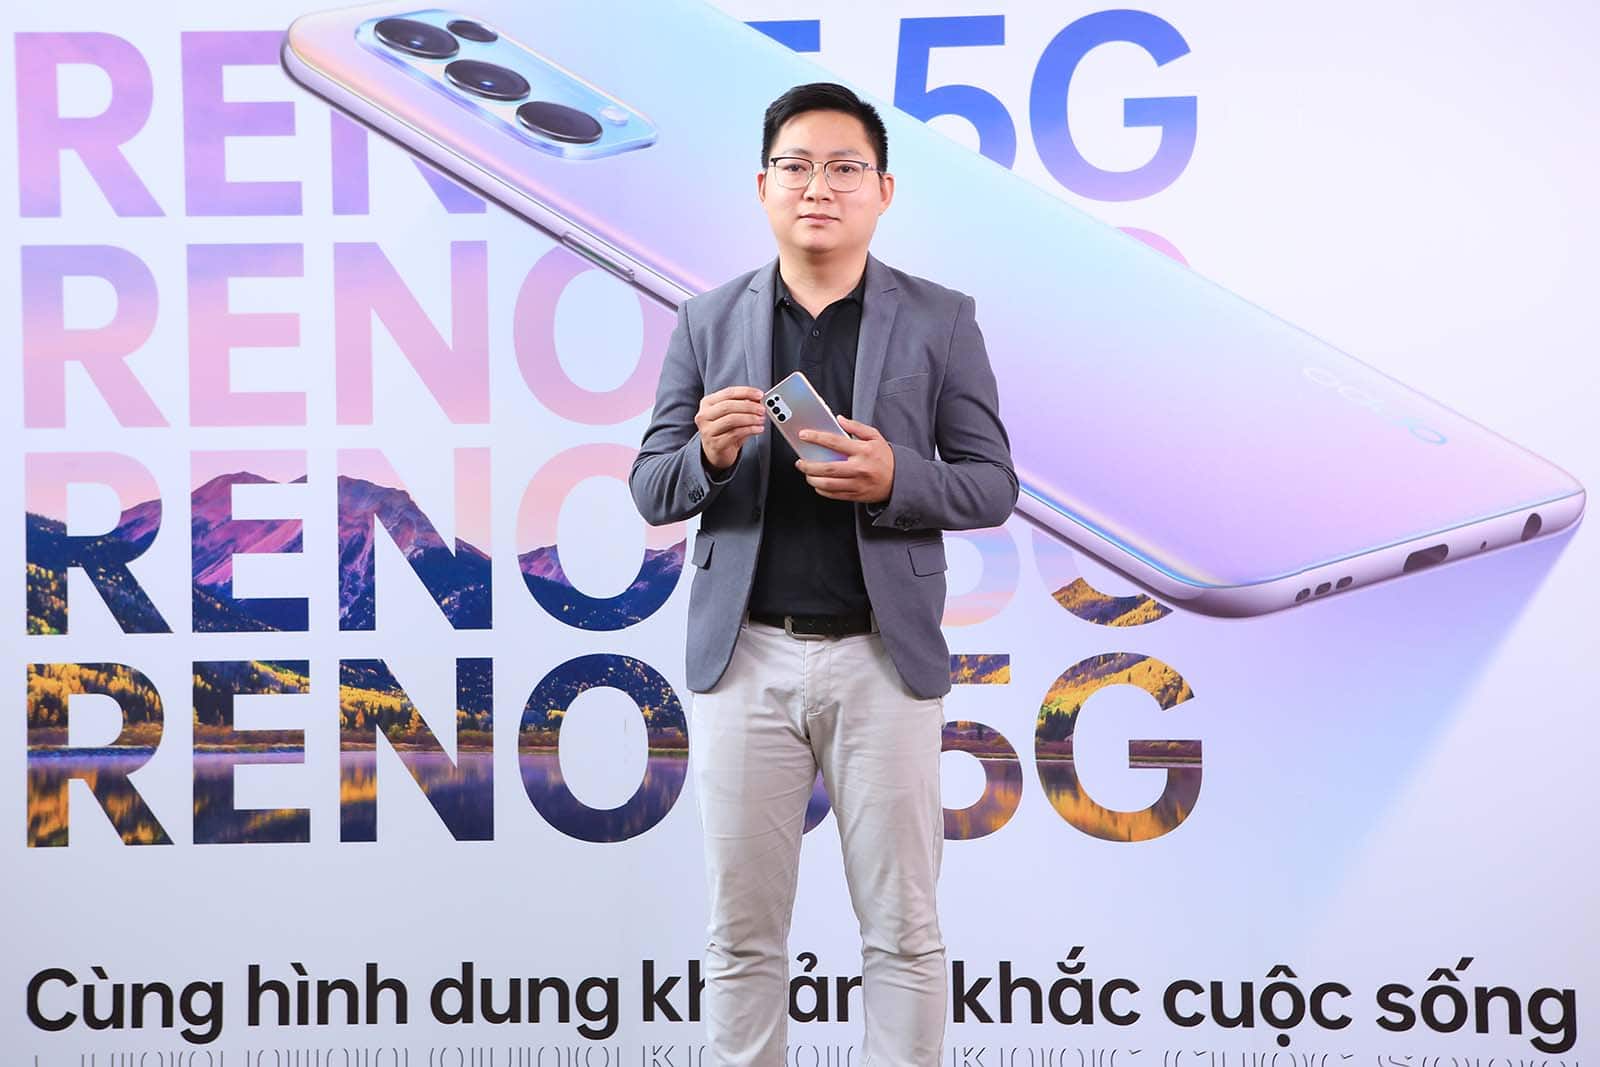 OPPO Reno5 5G chính thức ra mắt tại thị trường Việt Nam giá 11,990,000 VNĐ